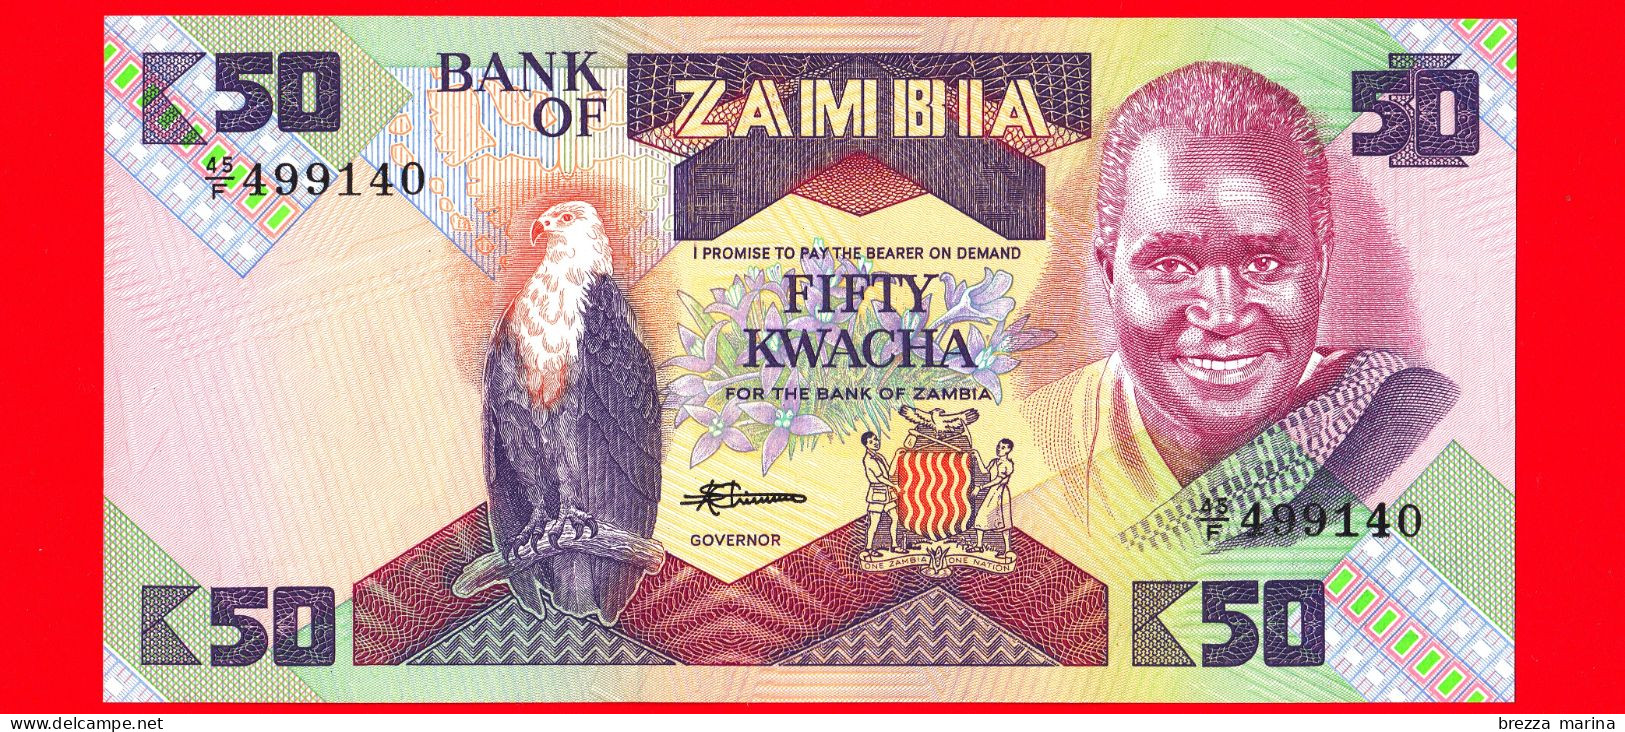 Nuovo - MNH - ZAMBIA - 1986-1988 - Banconota (45/F 499140) - FDS - Bank Of Zambia - 50 Kwacha - Sambia